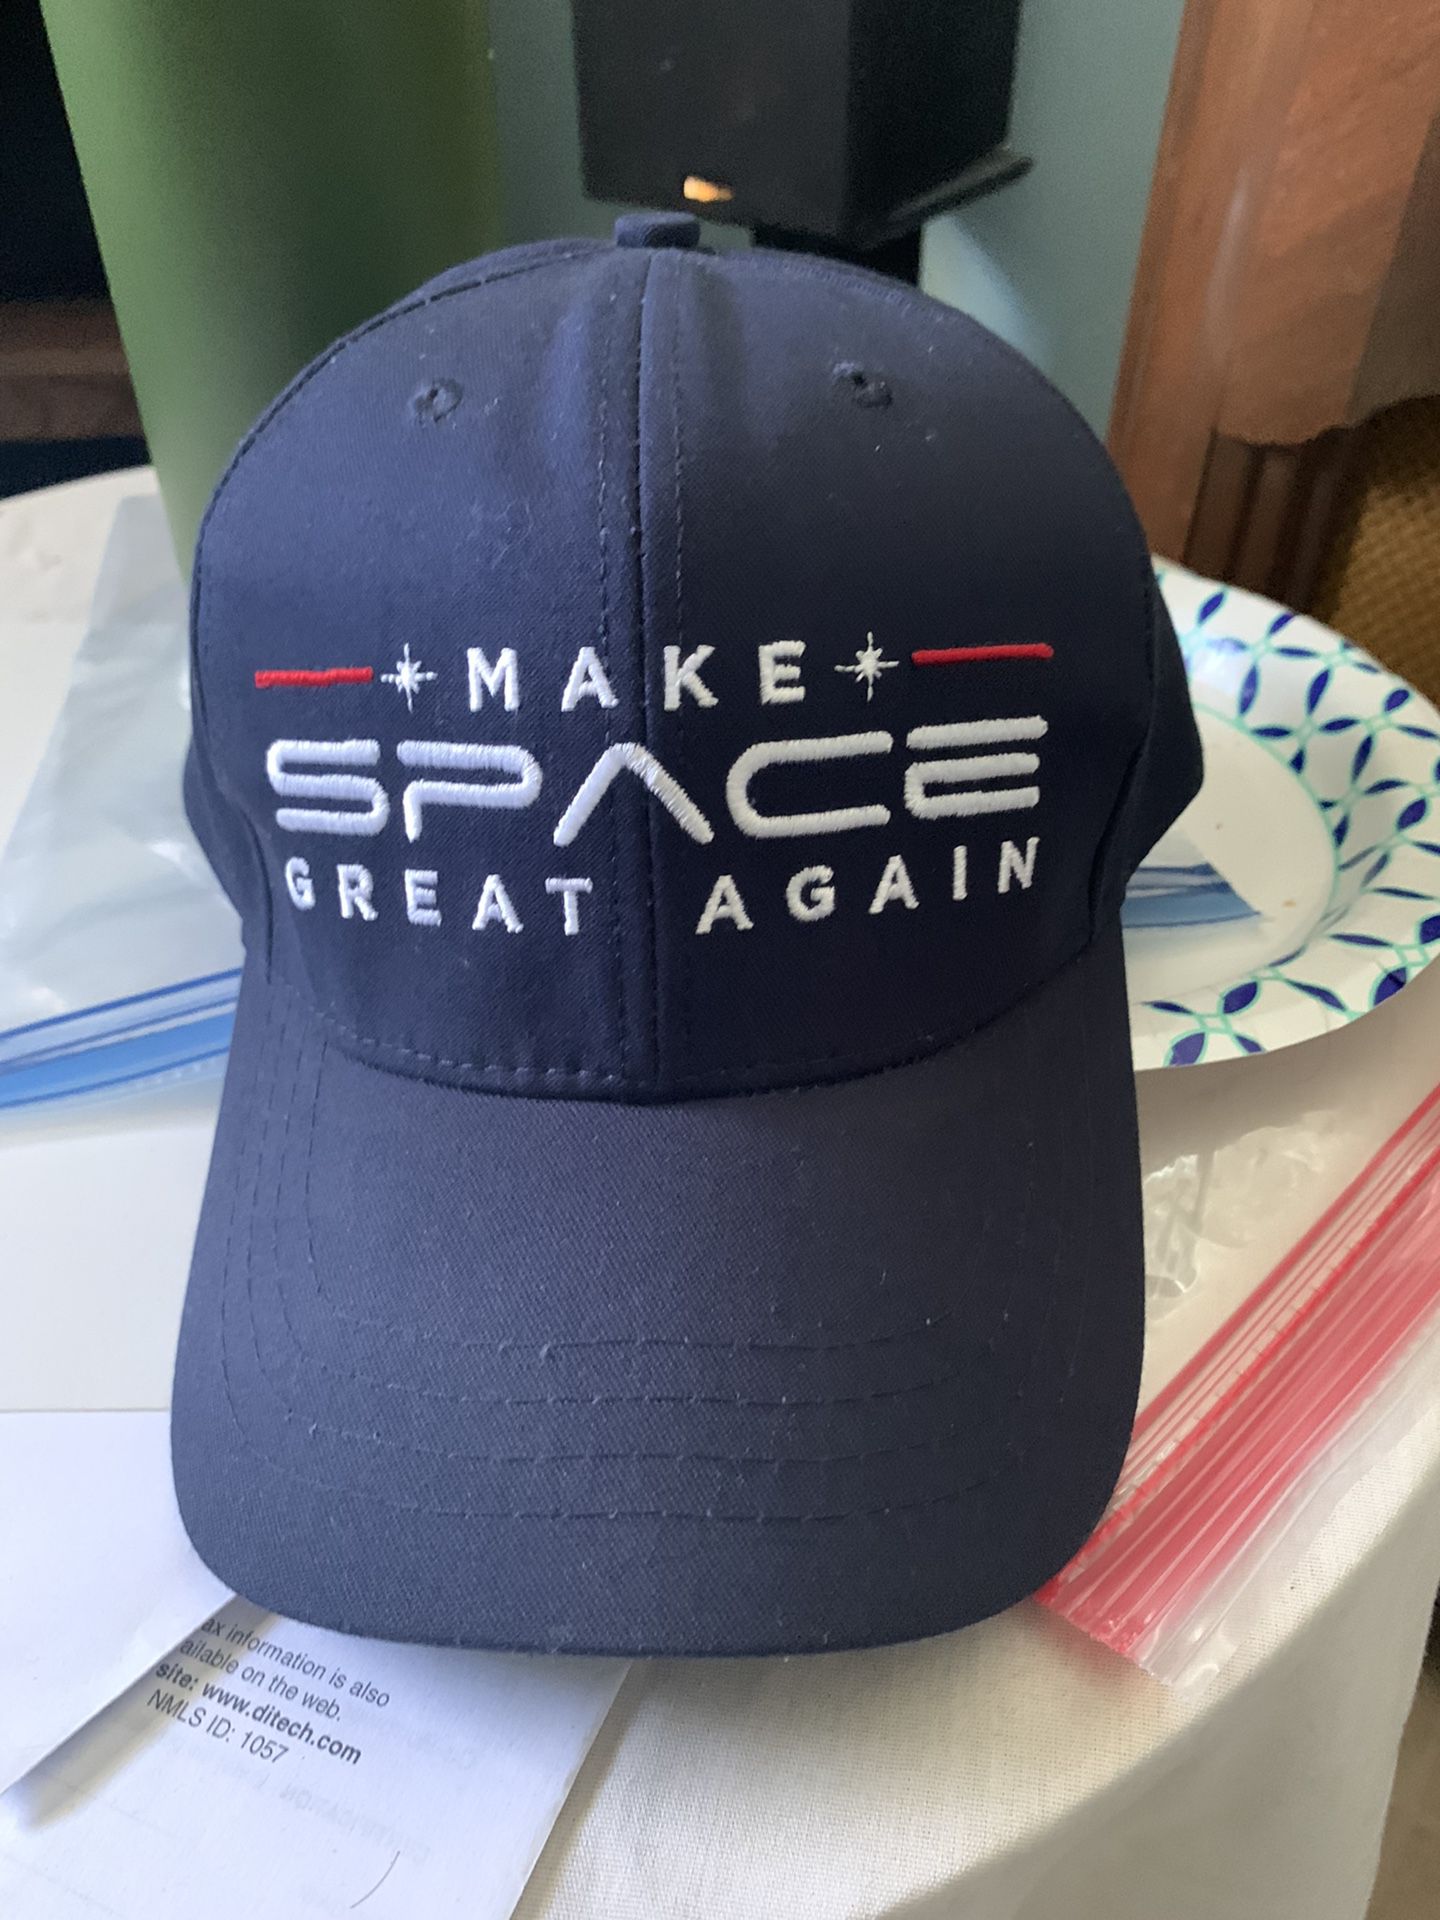 Genuine Donald Trump “Make Space Great Again” Baseball Cap